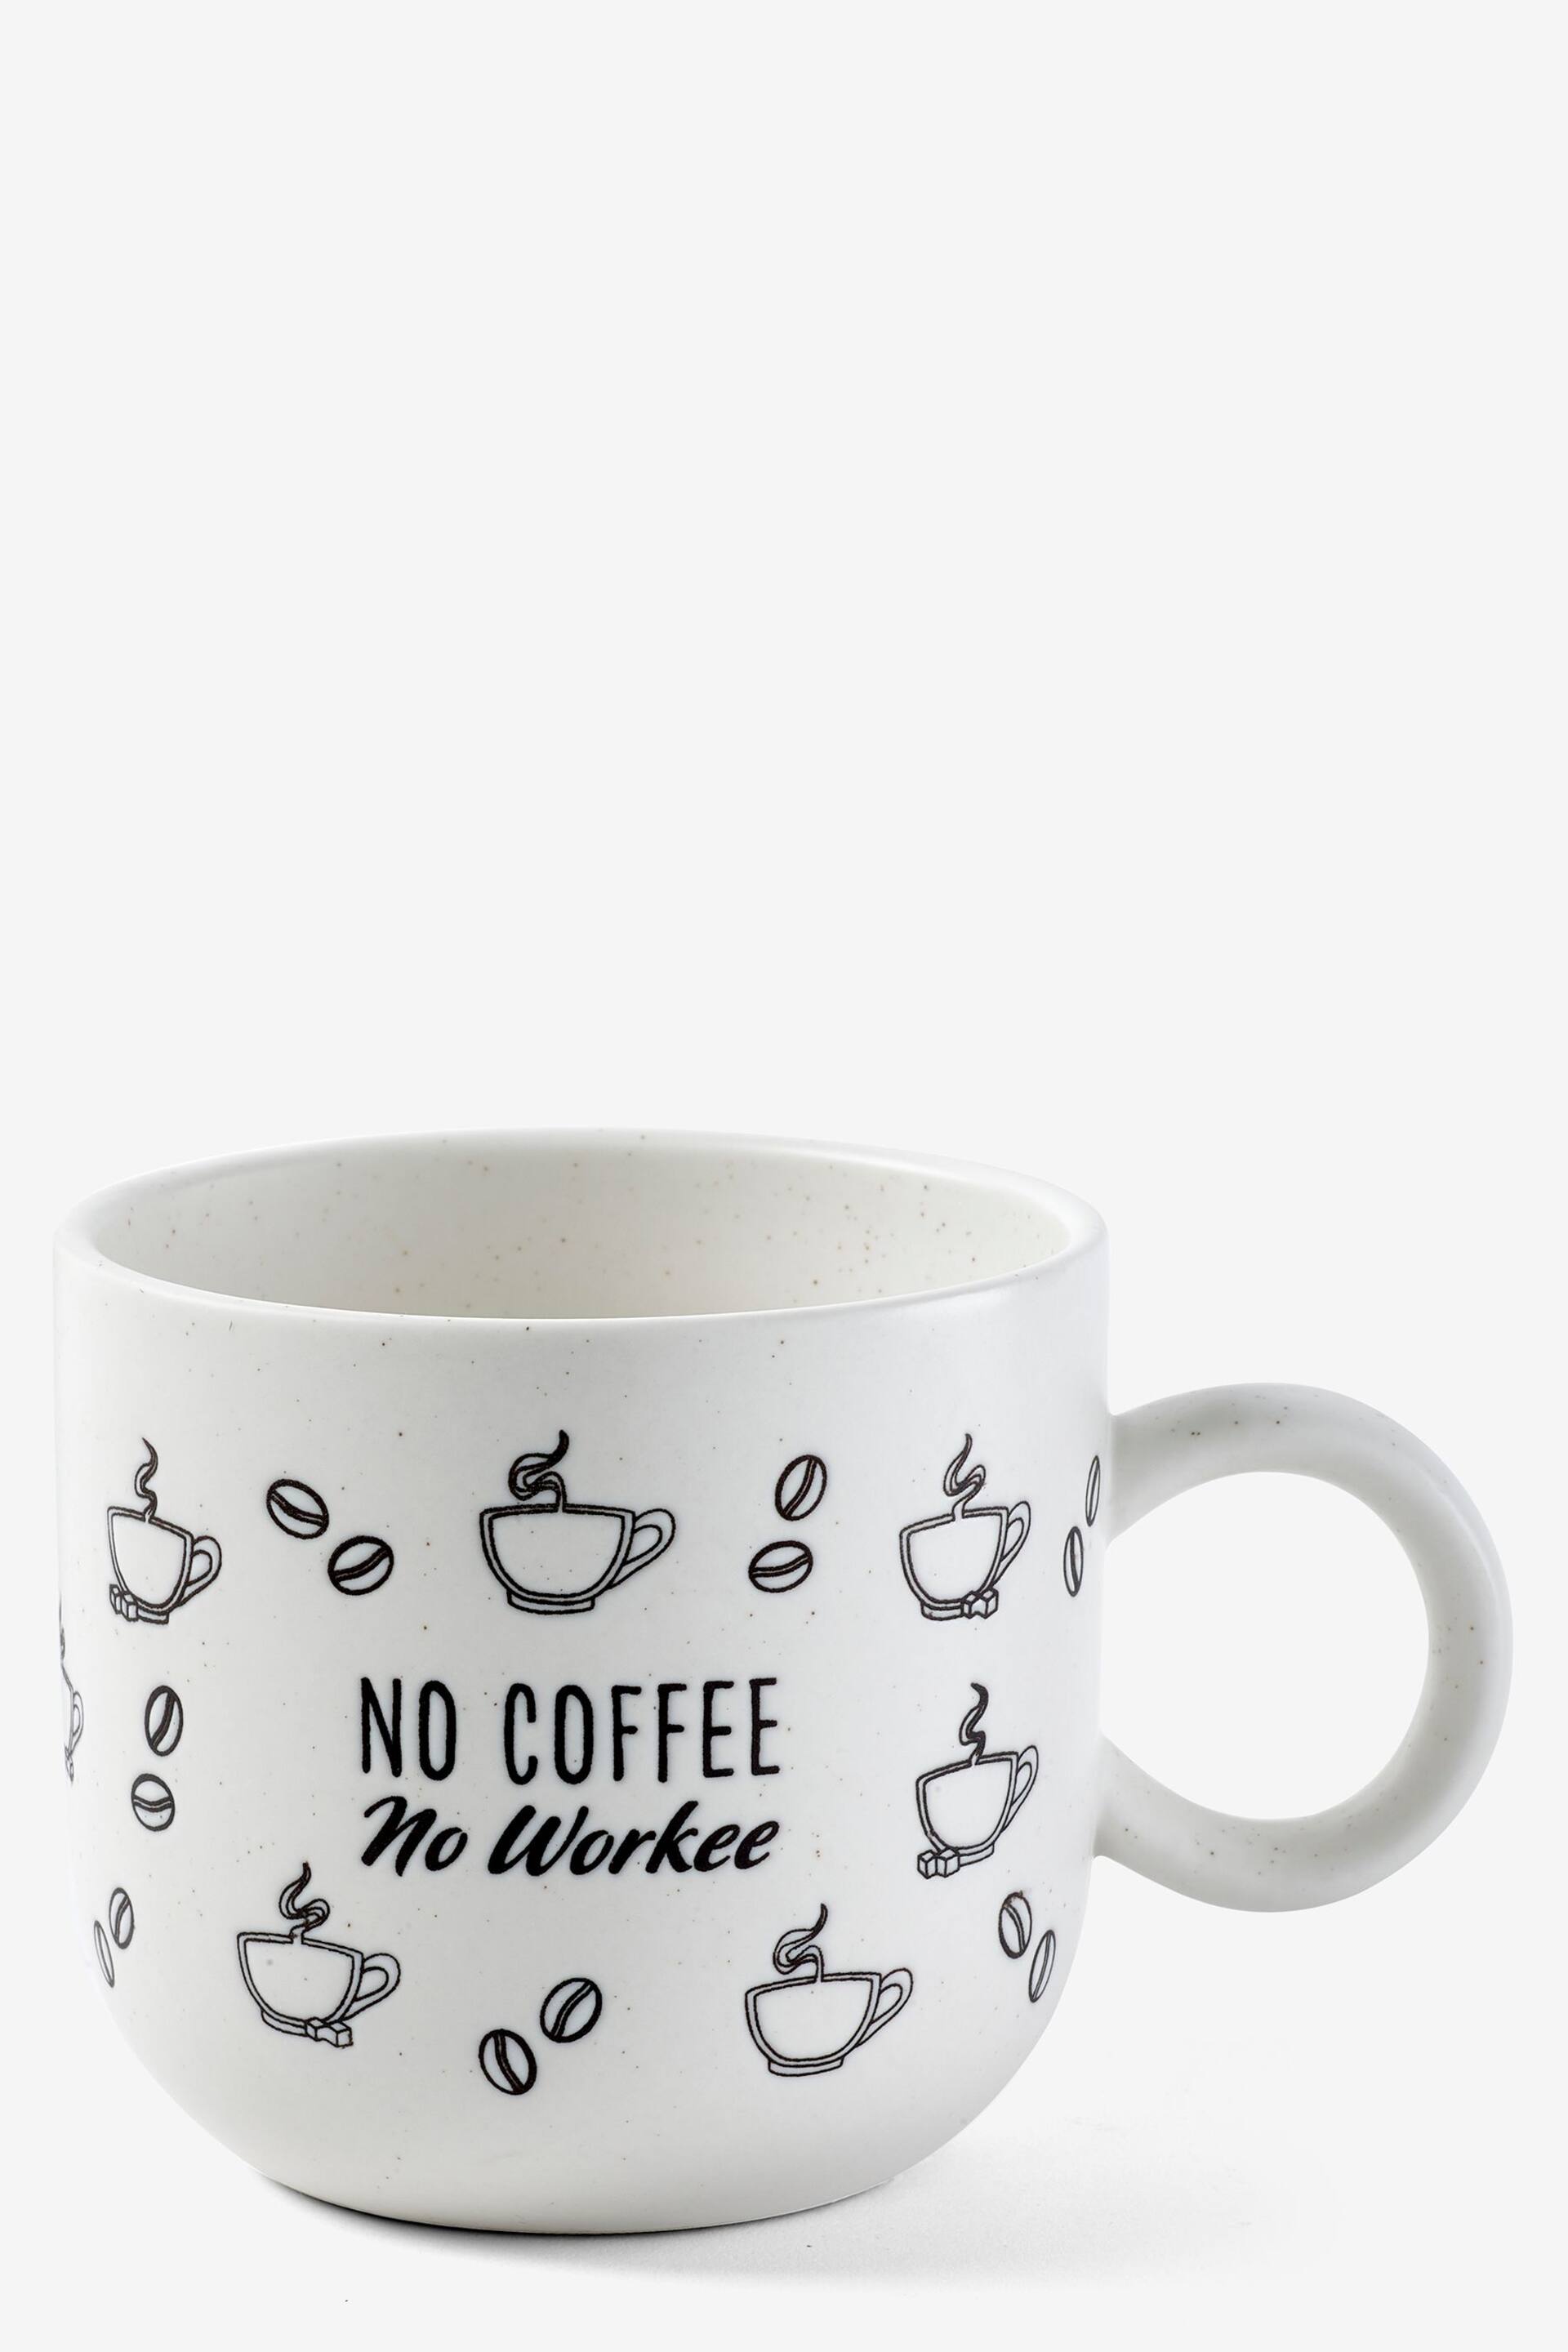 White No Coffee No Workee Mug - Image 3 of 3